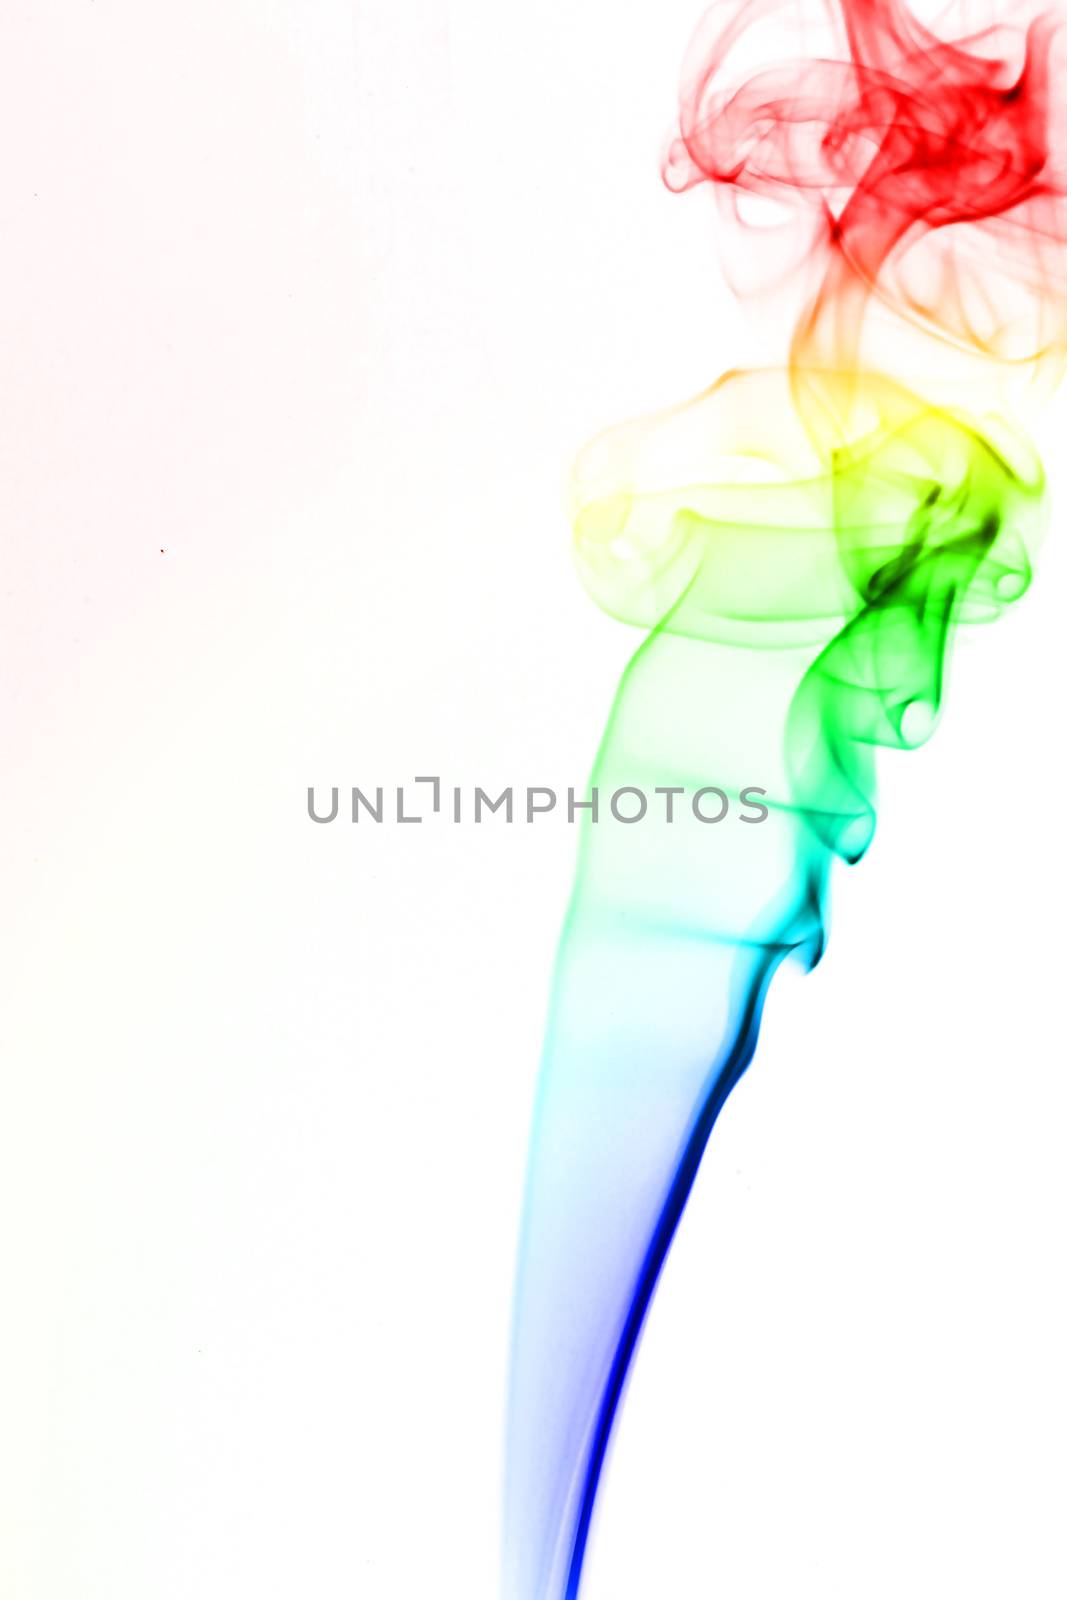 colored smoke by Yellowj